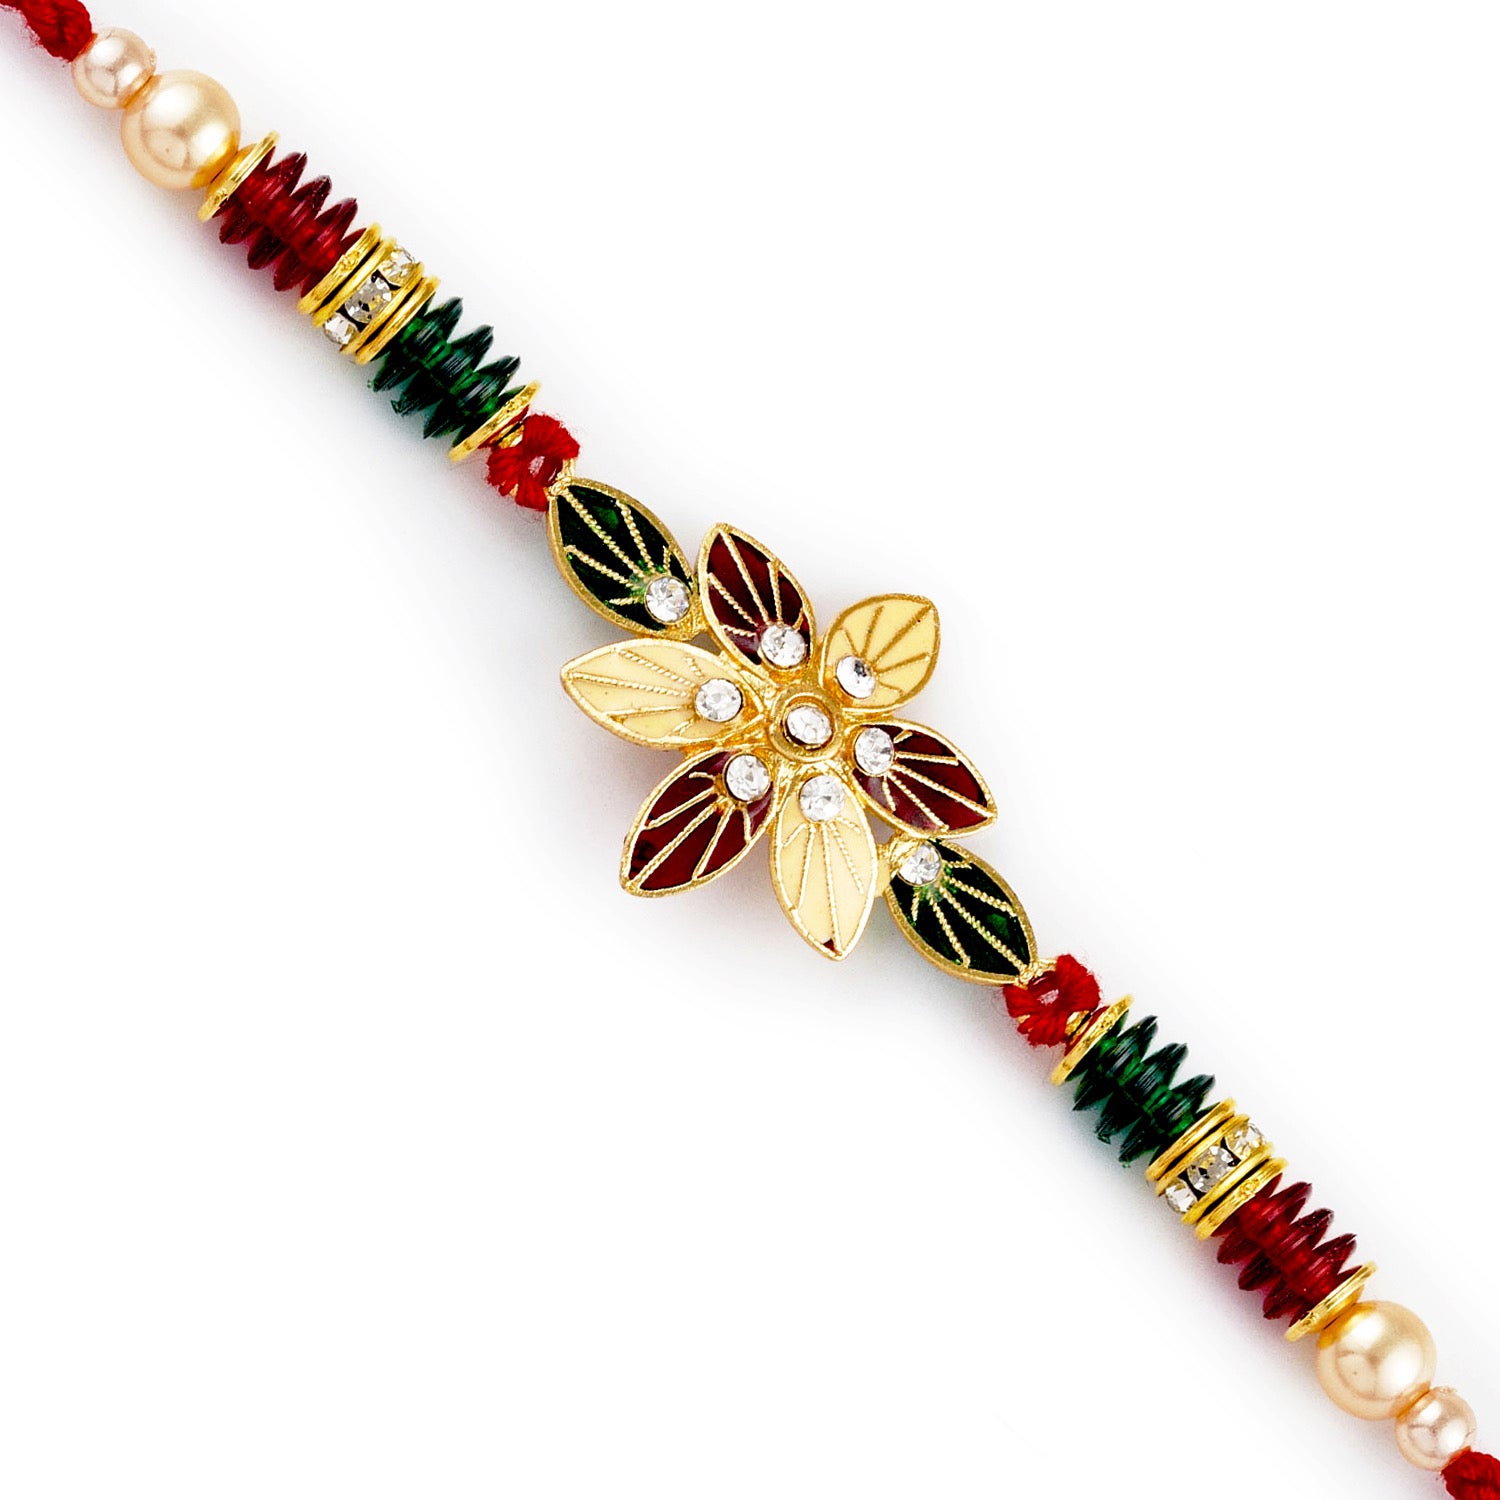 Aapno Rajasthan Red & Green Floral Motif & Beads Rakhi - Default Title (RJ17420)